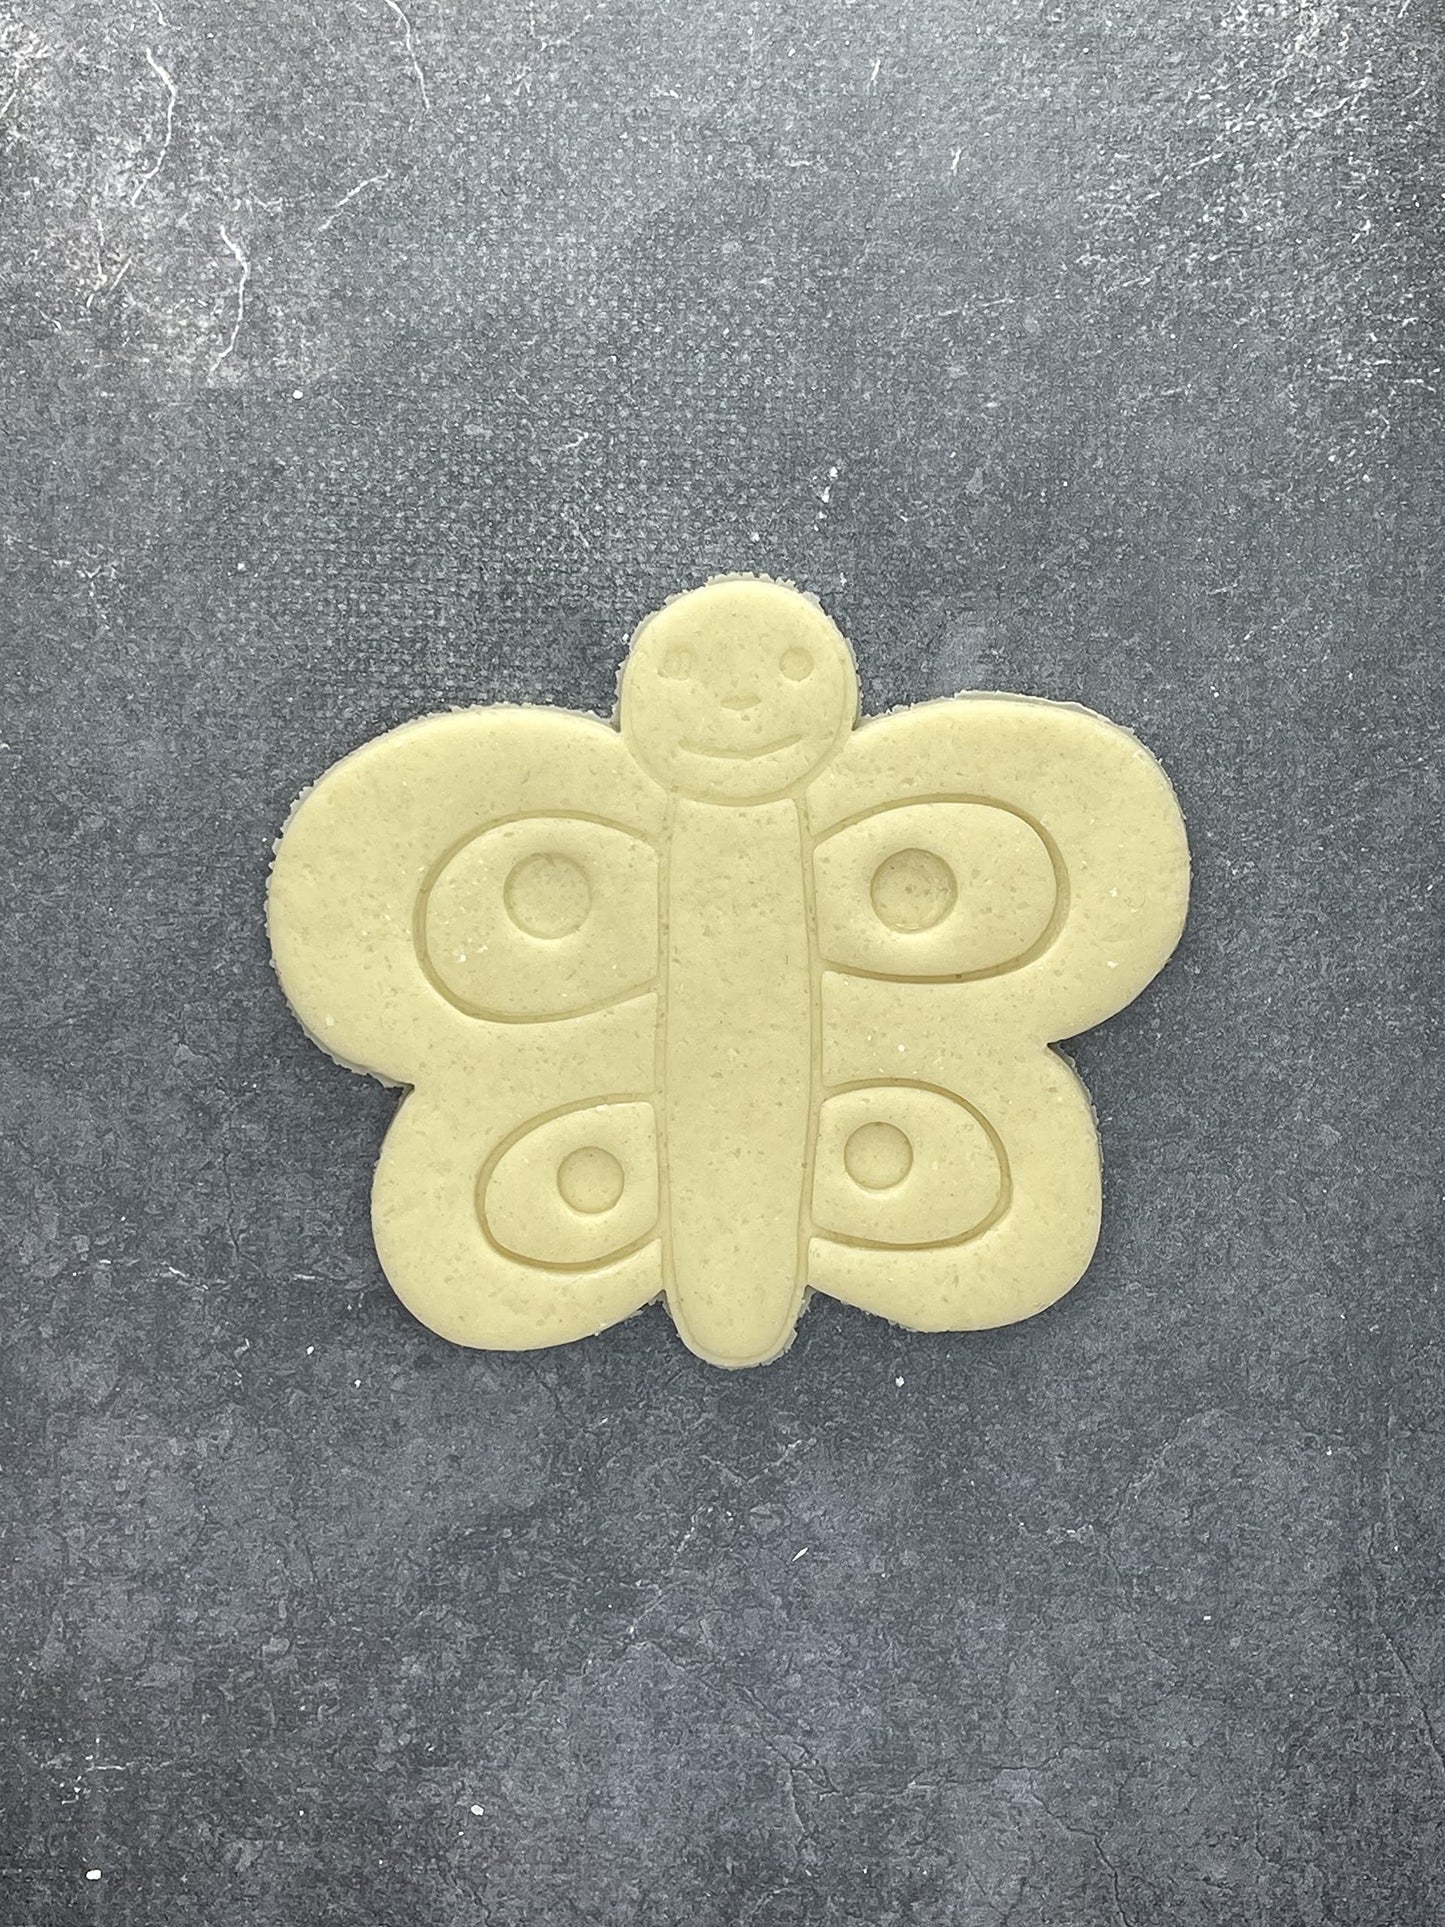 Emporte pièce Papillon - Animal - pour la réalisaton de biscuit sablé, patisserie, pate à sucre -Décoration gateau-Fait maison- ELACE